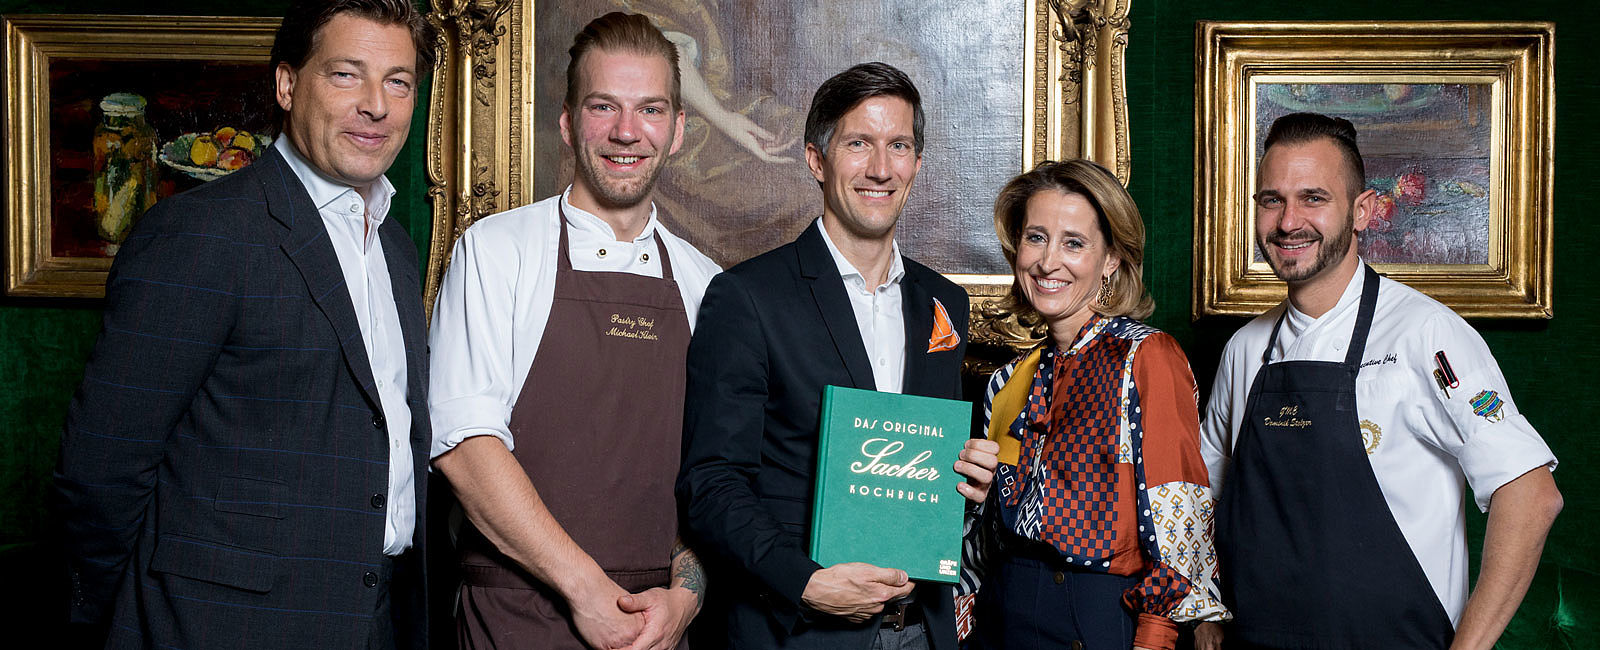 GRATULANTEN
 Das Original Sacher Kochbuch Schmankerl des berühmten Hotel Sacher 
